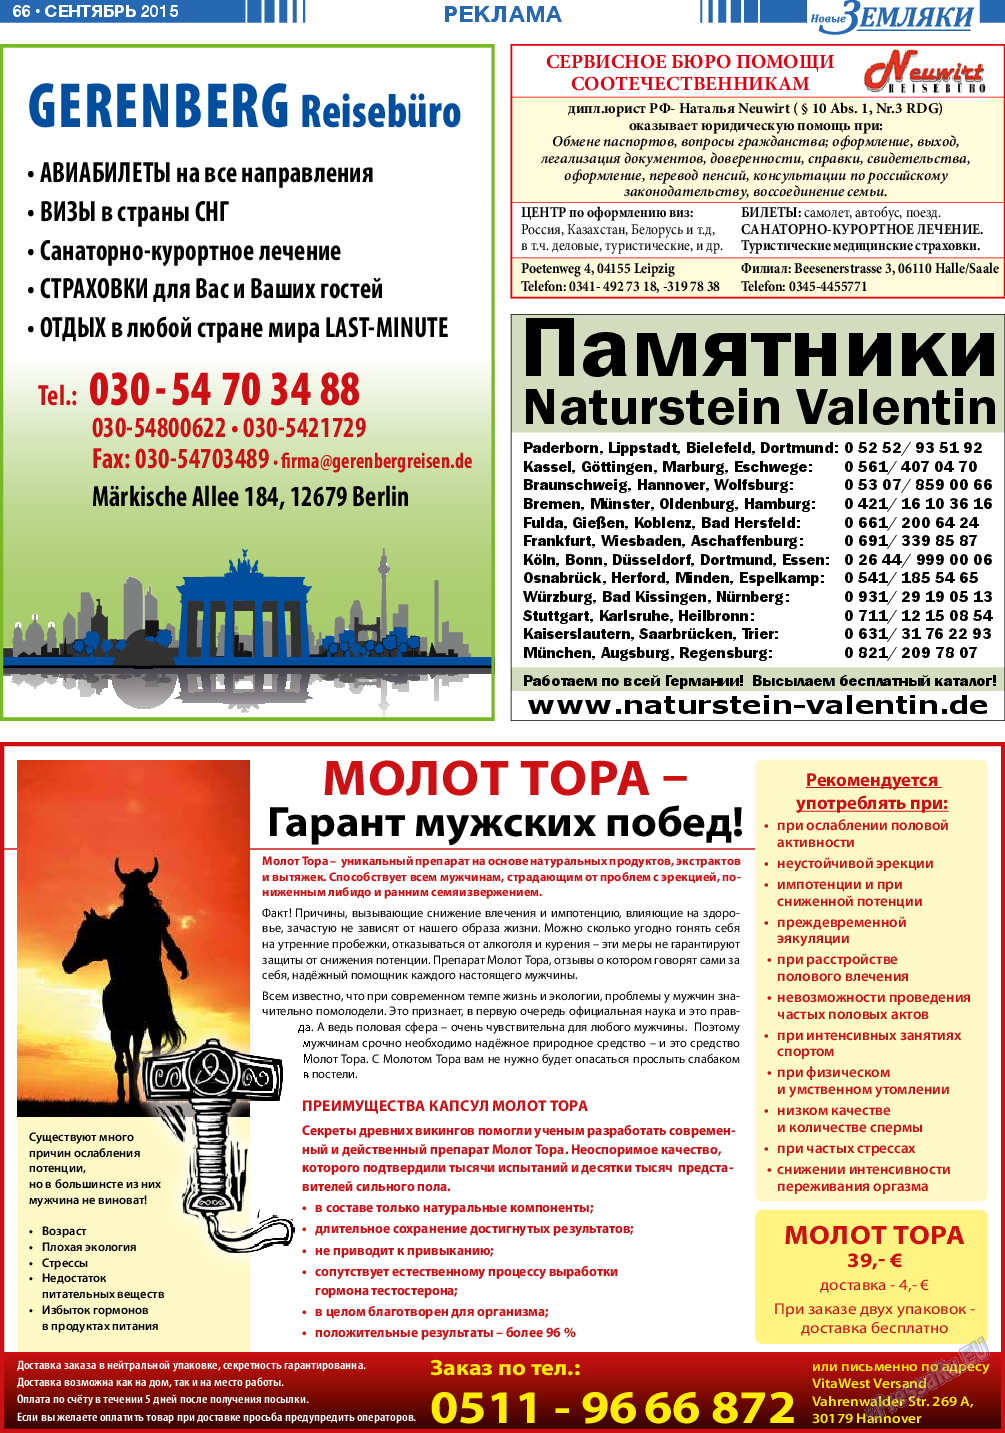 Новые Земляки, газета. 2015 №9 стр.66